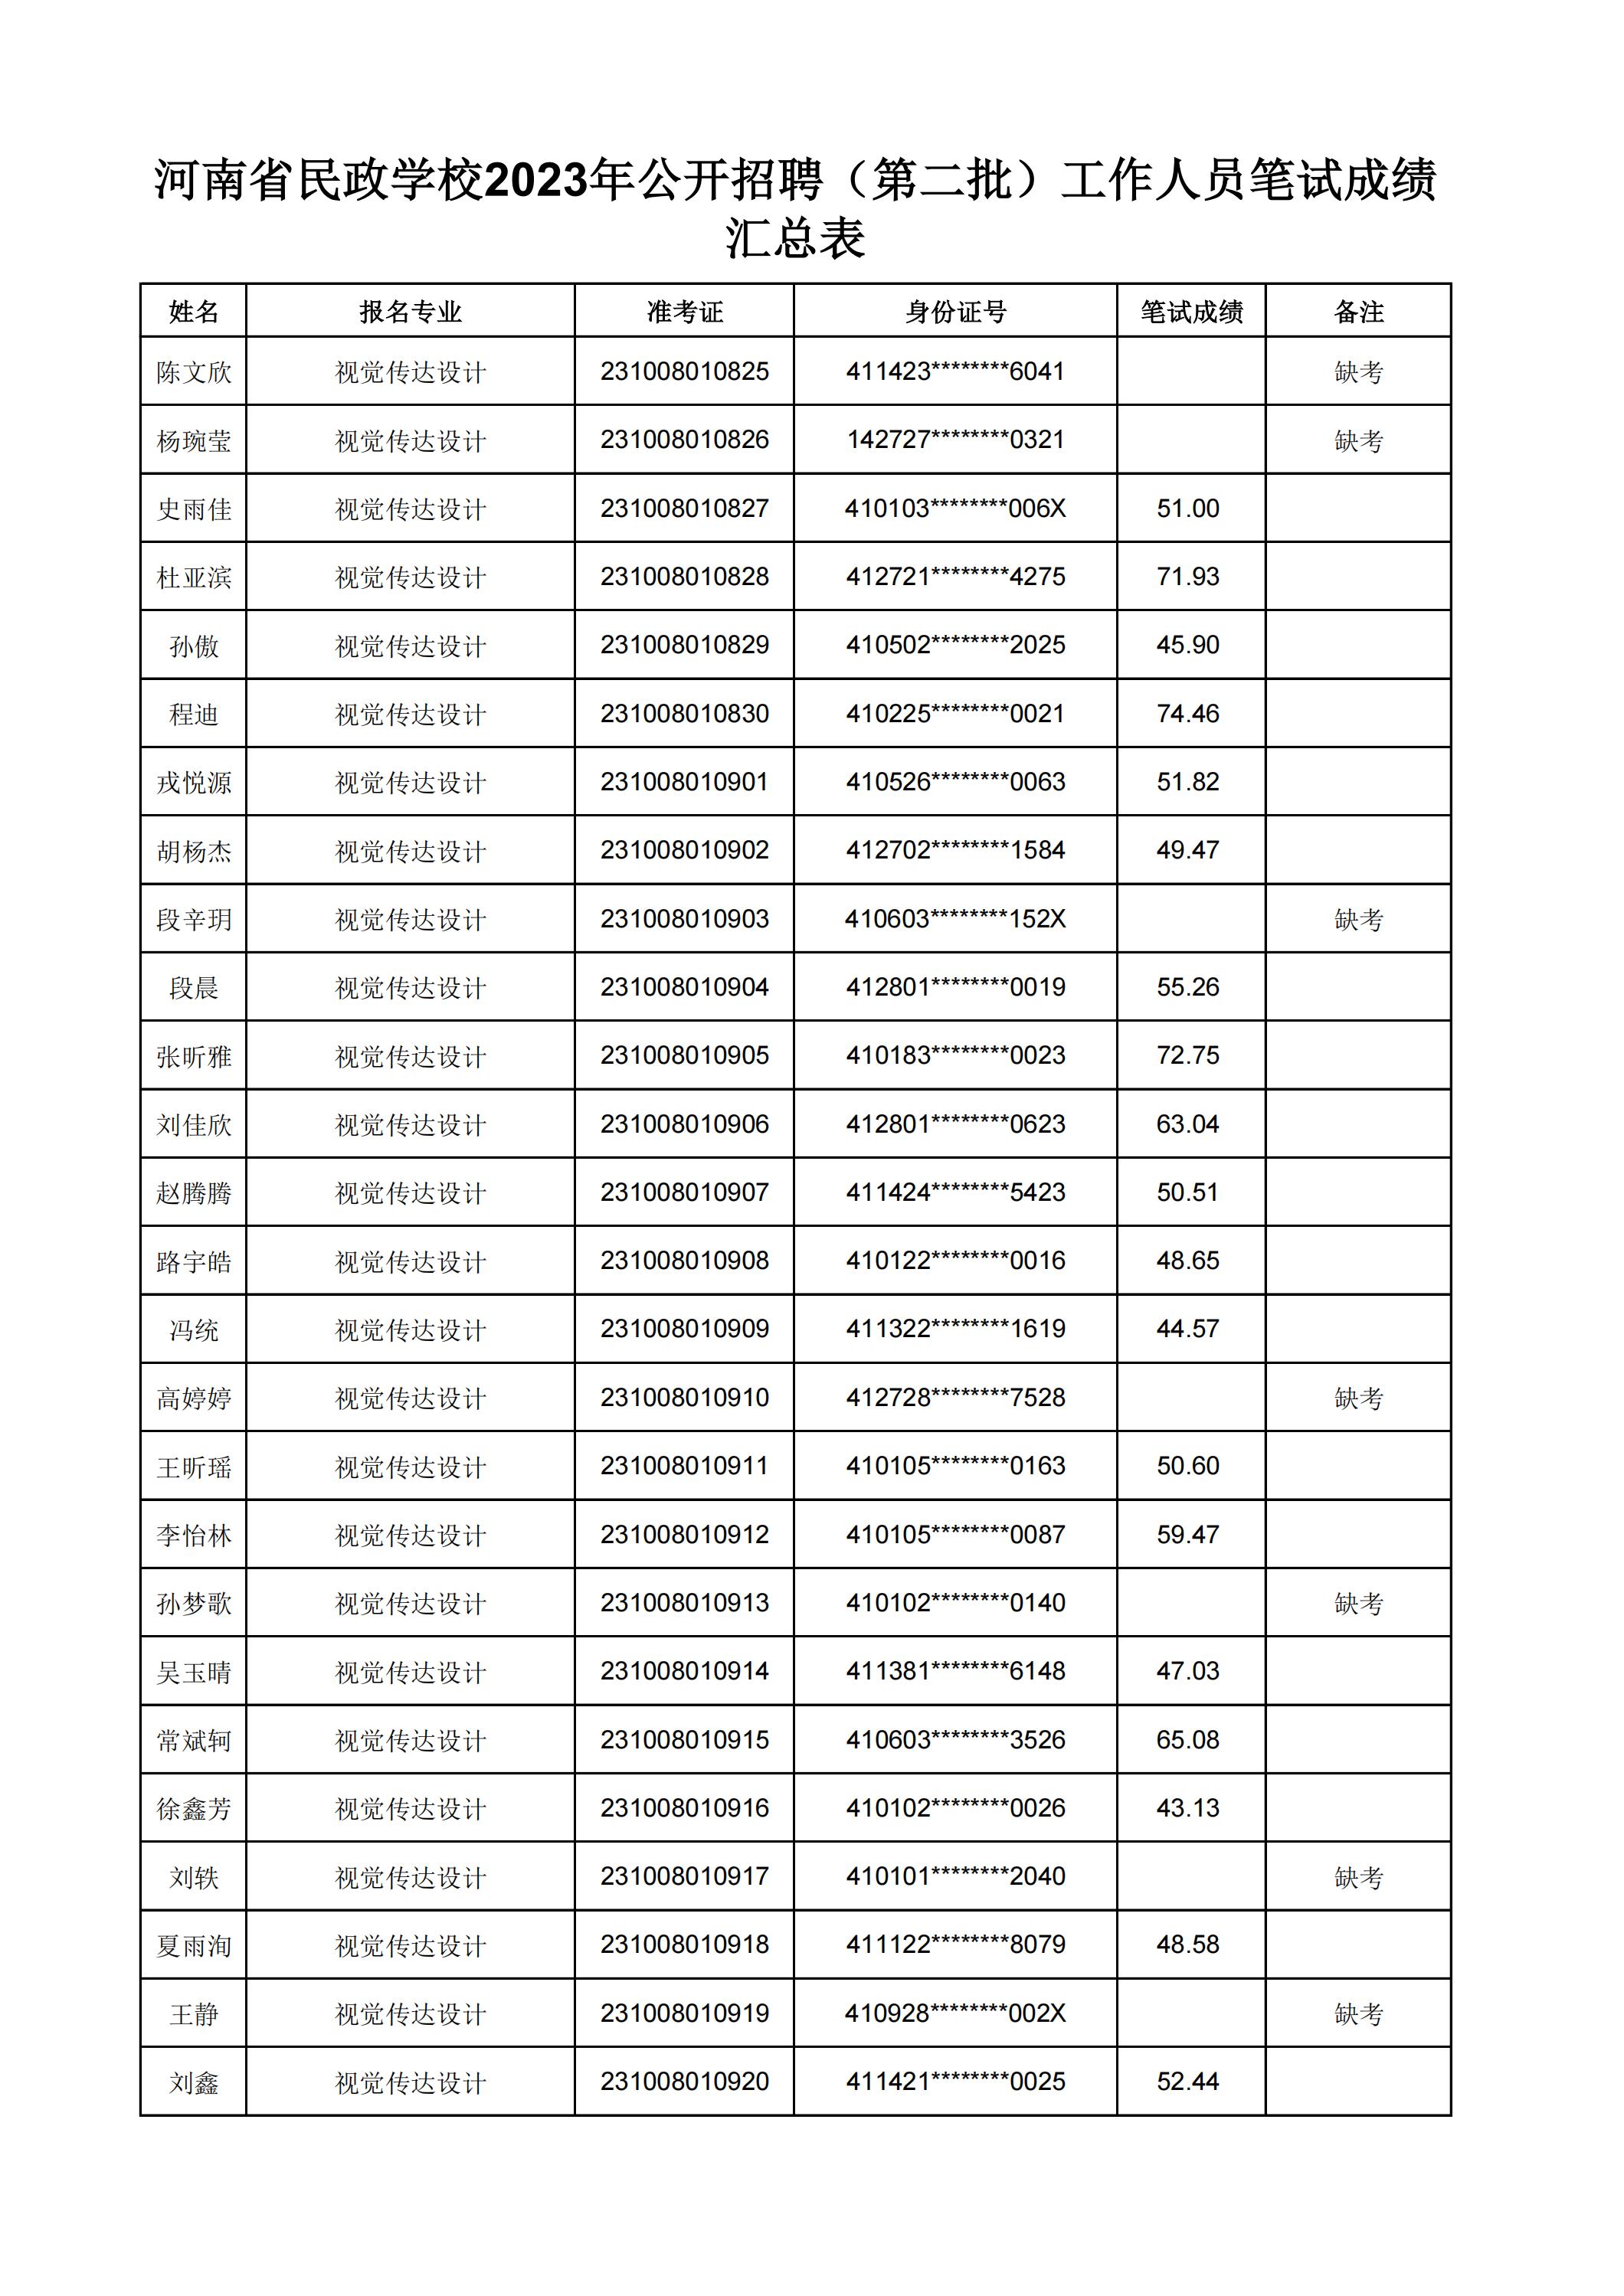 河南省民政学校2023年公开招聘（第二批）工作人员笔试成绩汇总表(2)_09.jpg